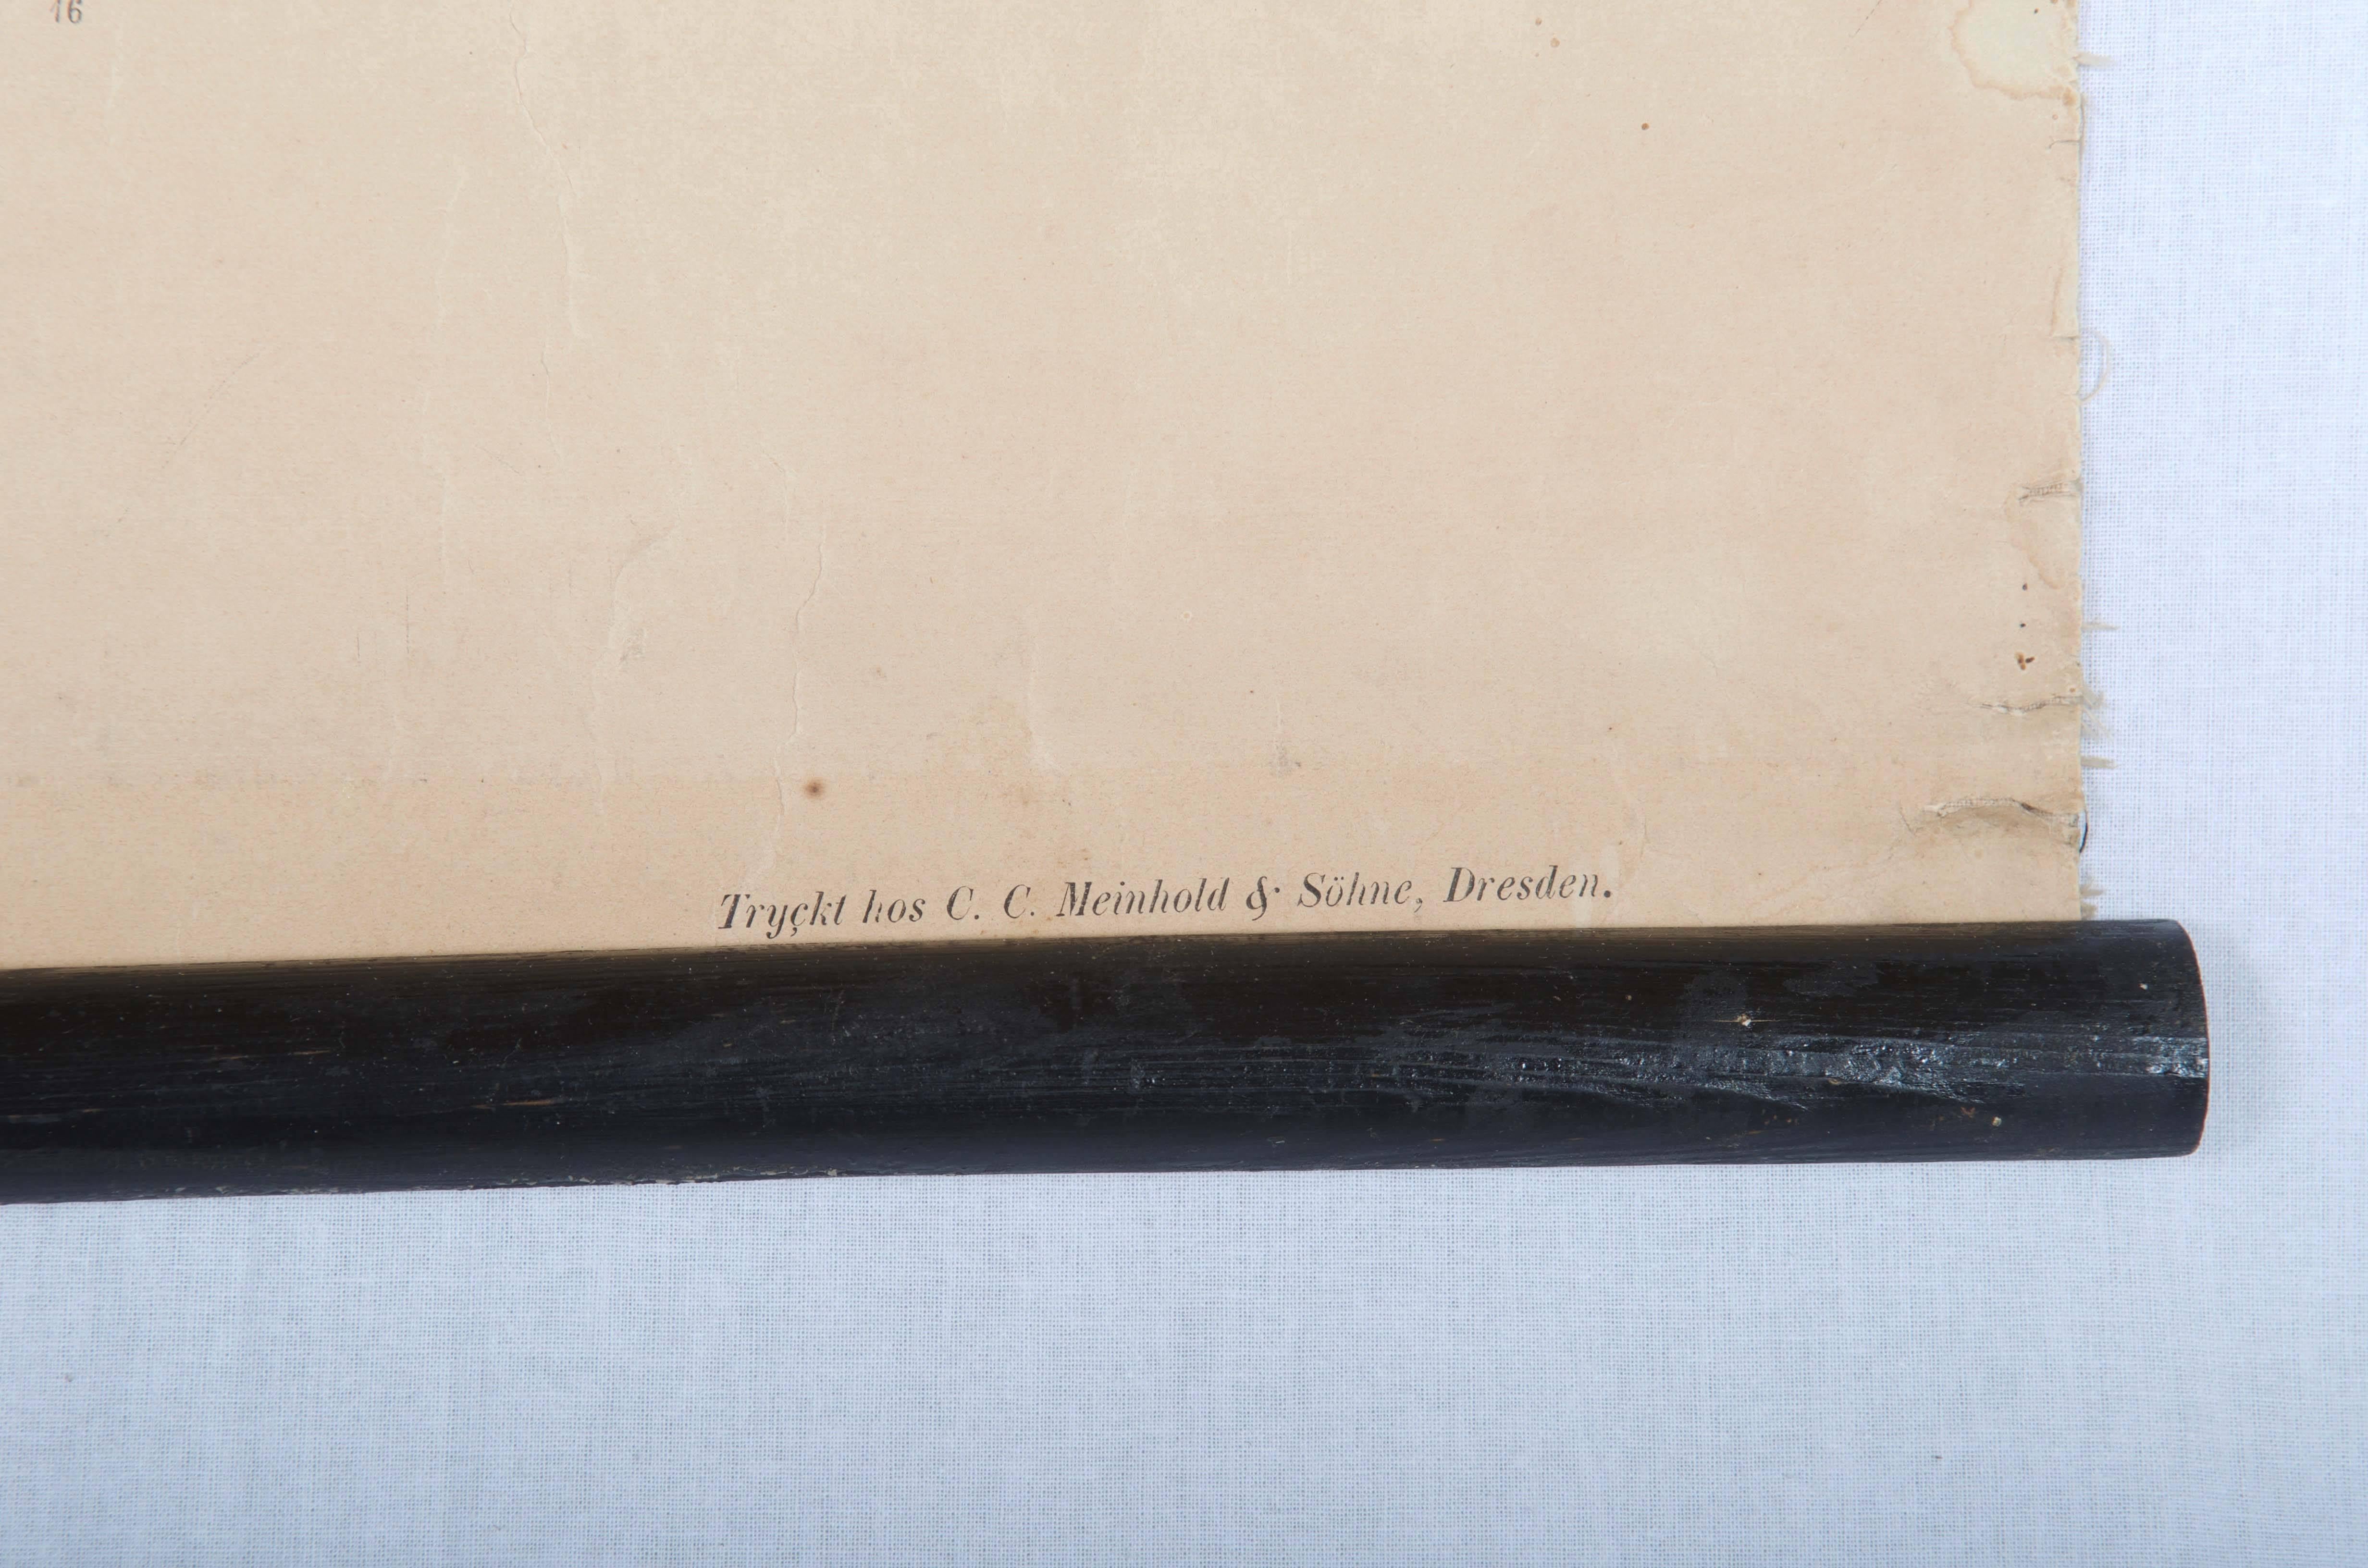 Wandtafel mit der Darstellung der menschlichen Organe.
Wahrscheinlich aus den 1850er Jahren. Gedruckt in Deutschland für schwedische Schulen.
Bunter Druck auf Papier.
Guter Originalzustand, altersbedingte Gebrauchsspuren.